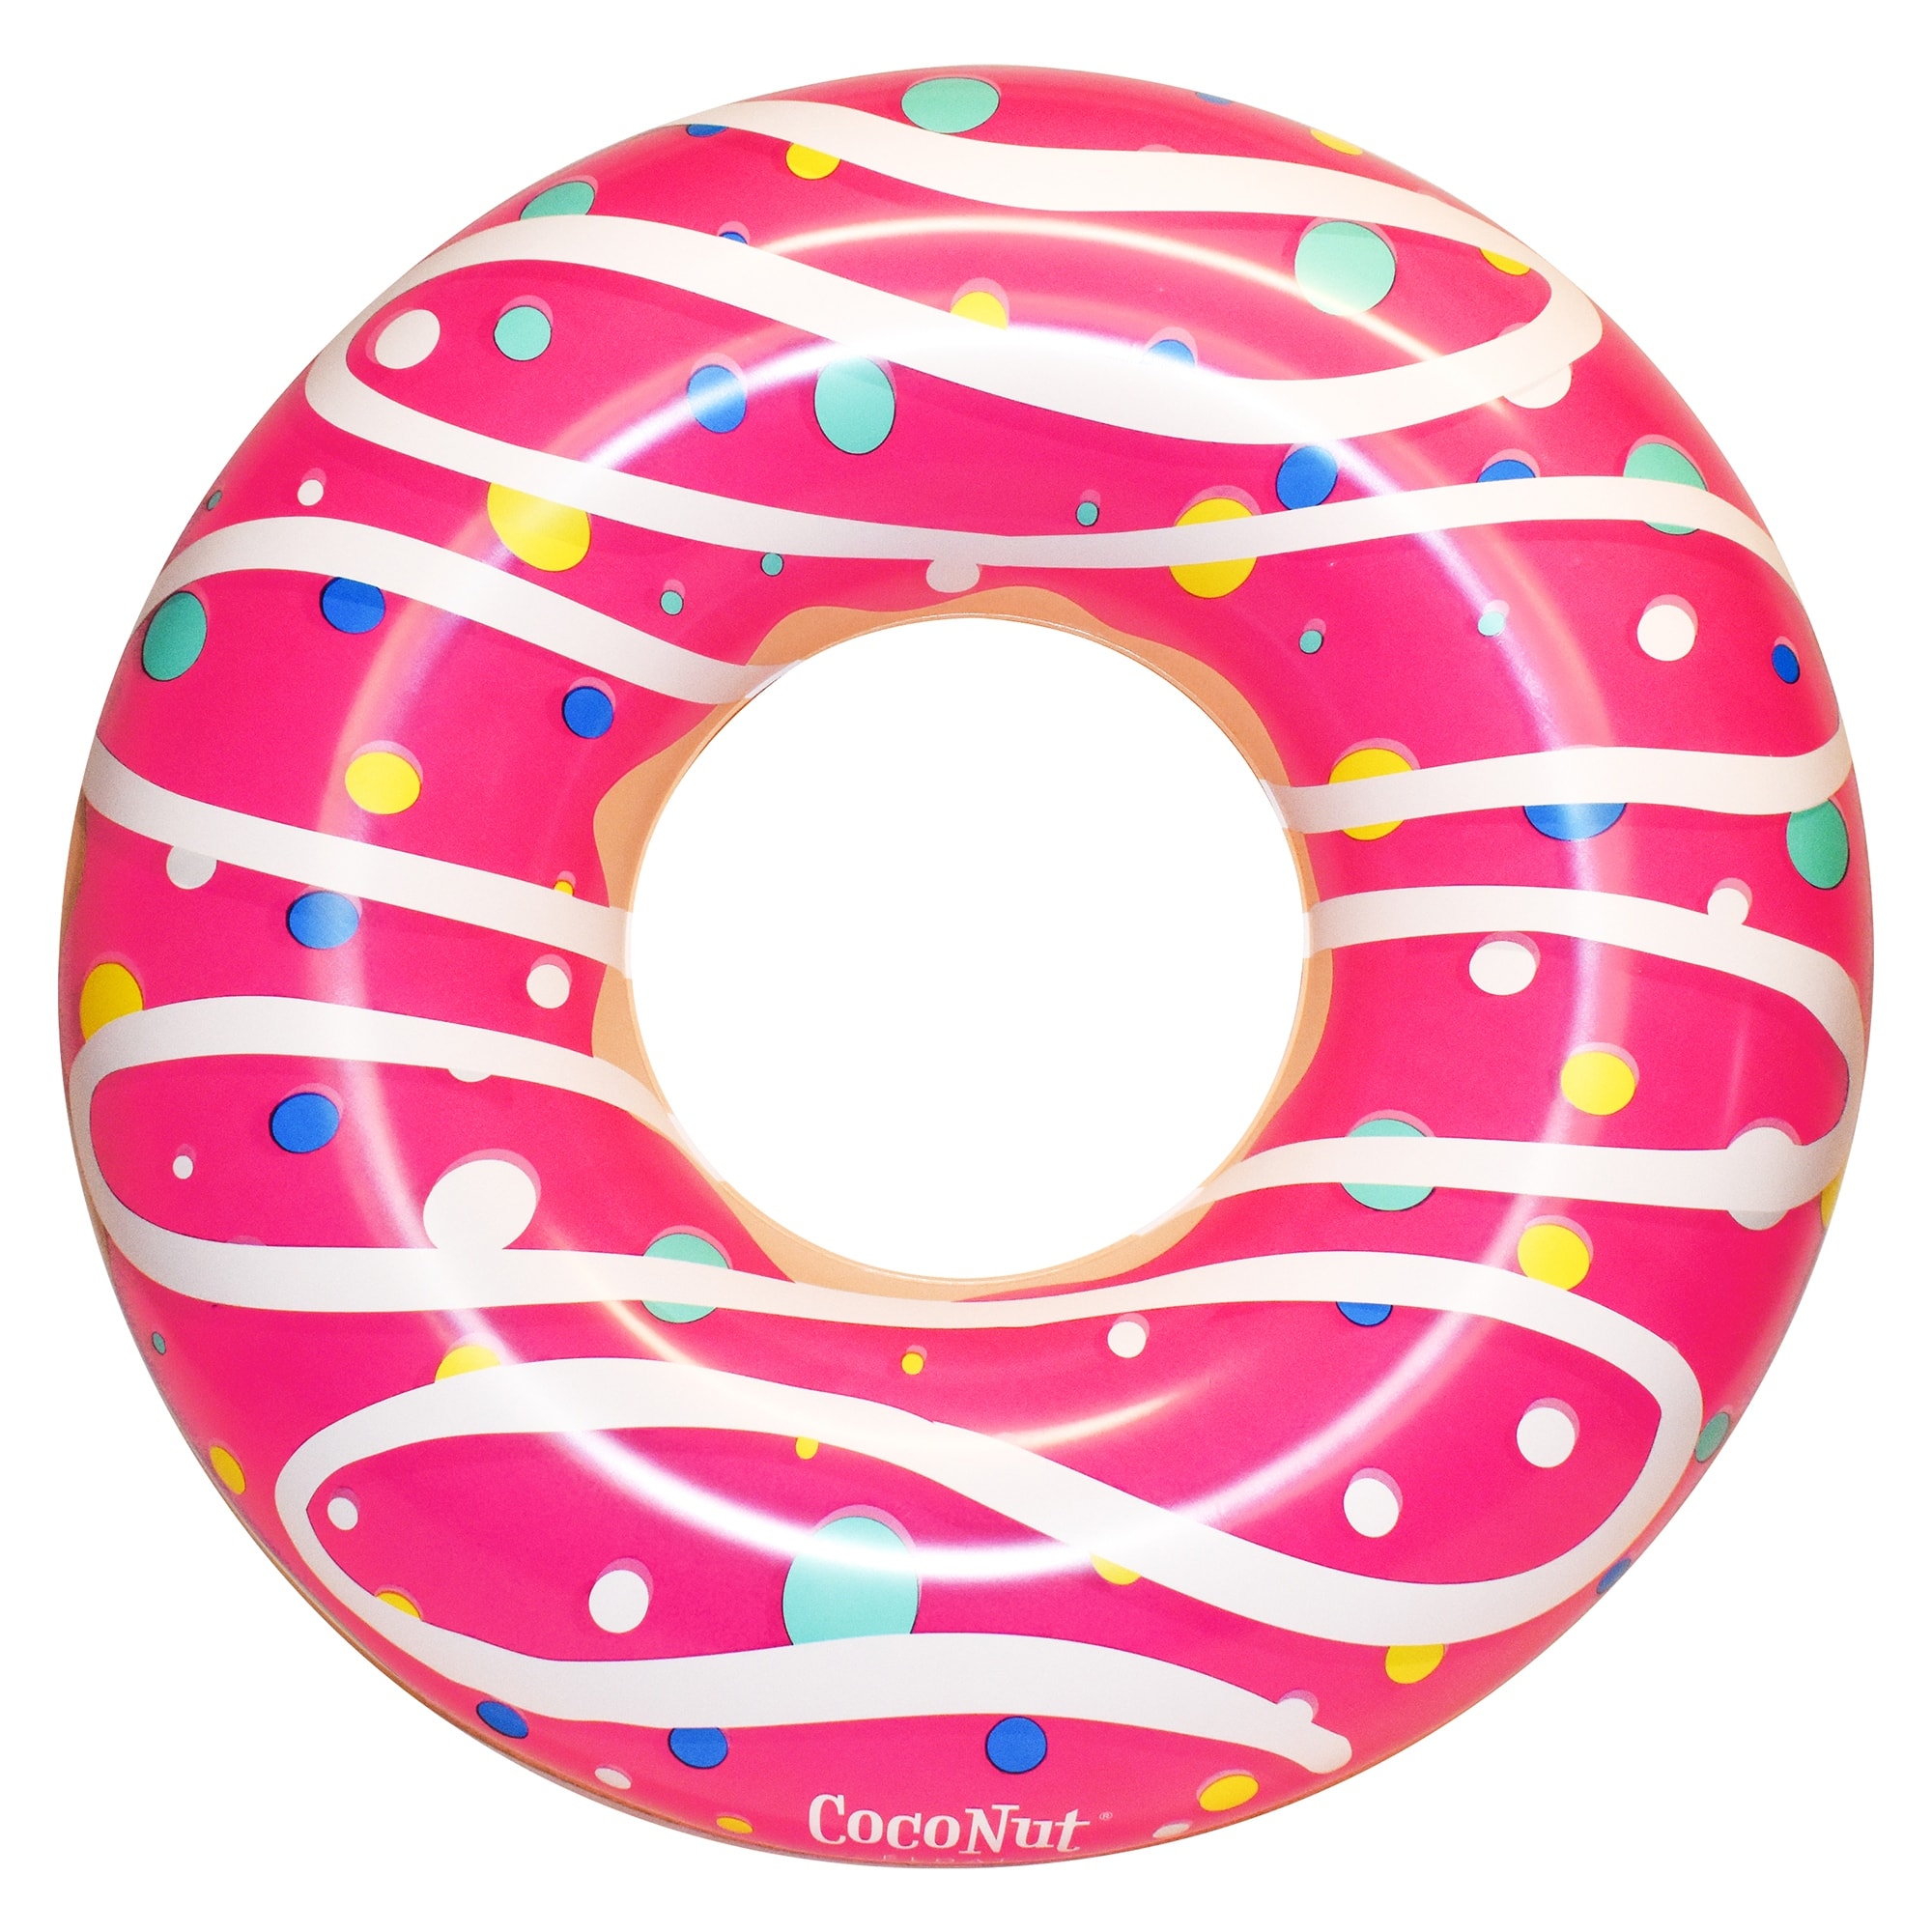 CocoNut Float: Pink Sprinkled & Glazed Donut - 48